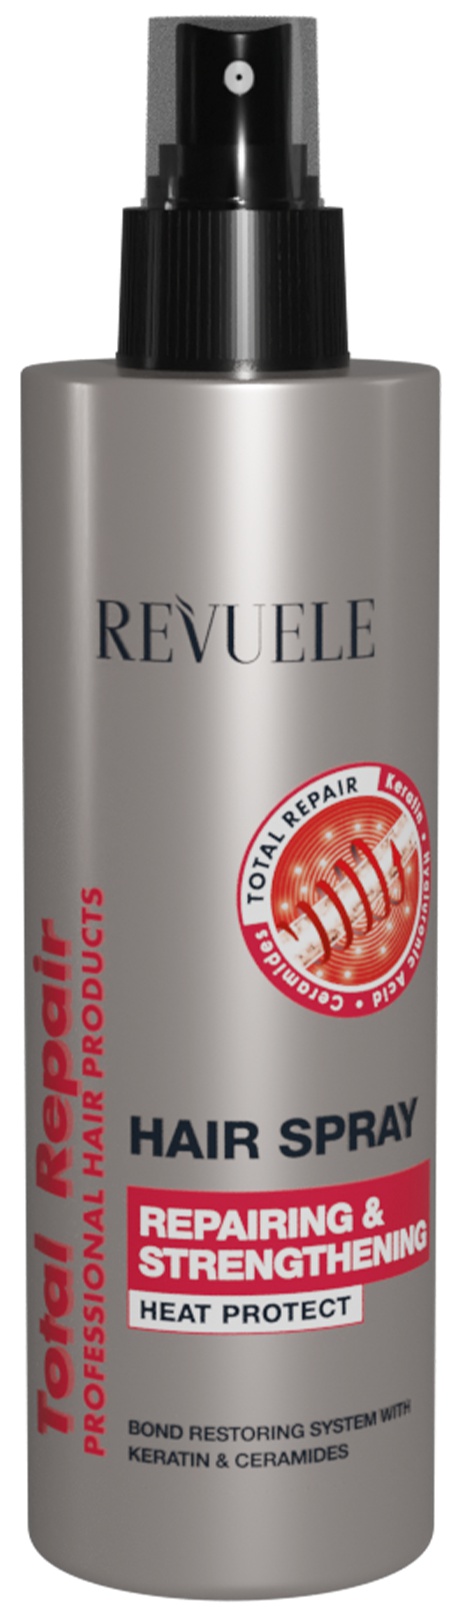 Revuele Total Repair Hair Spray